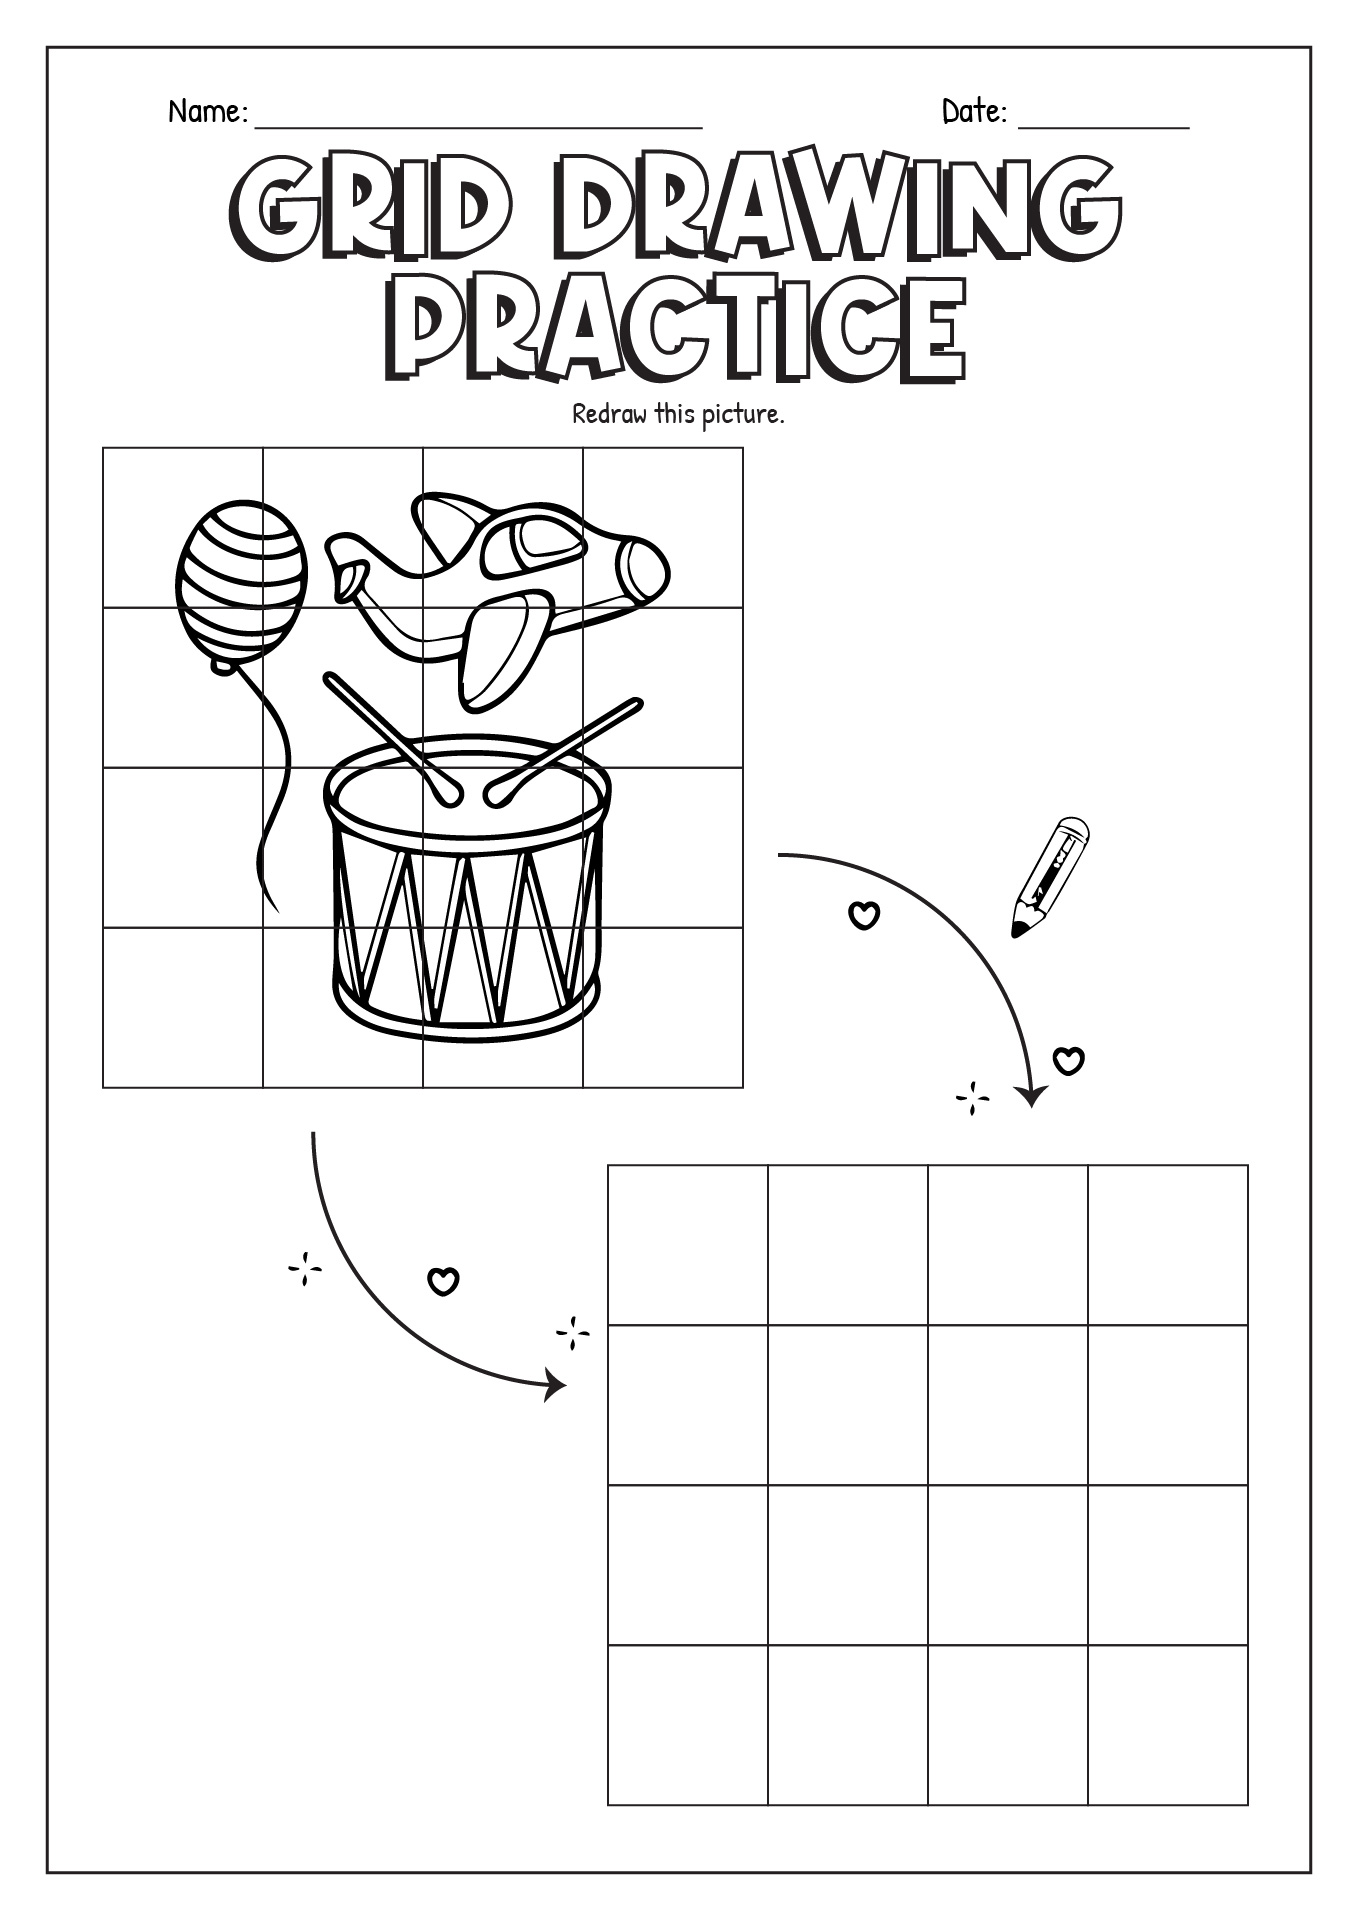 Grid Drawing Practice Worksheet